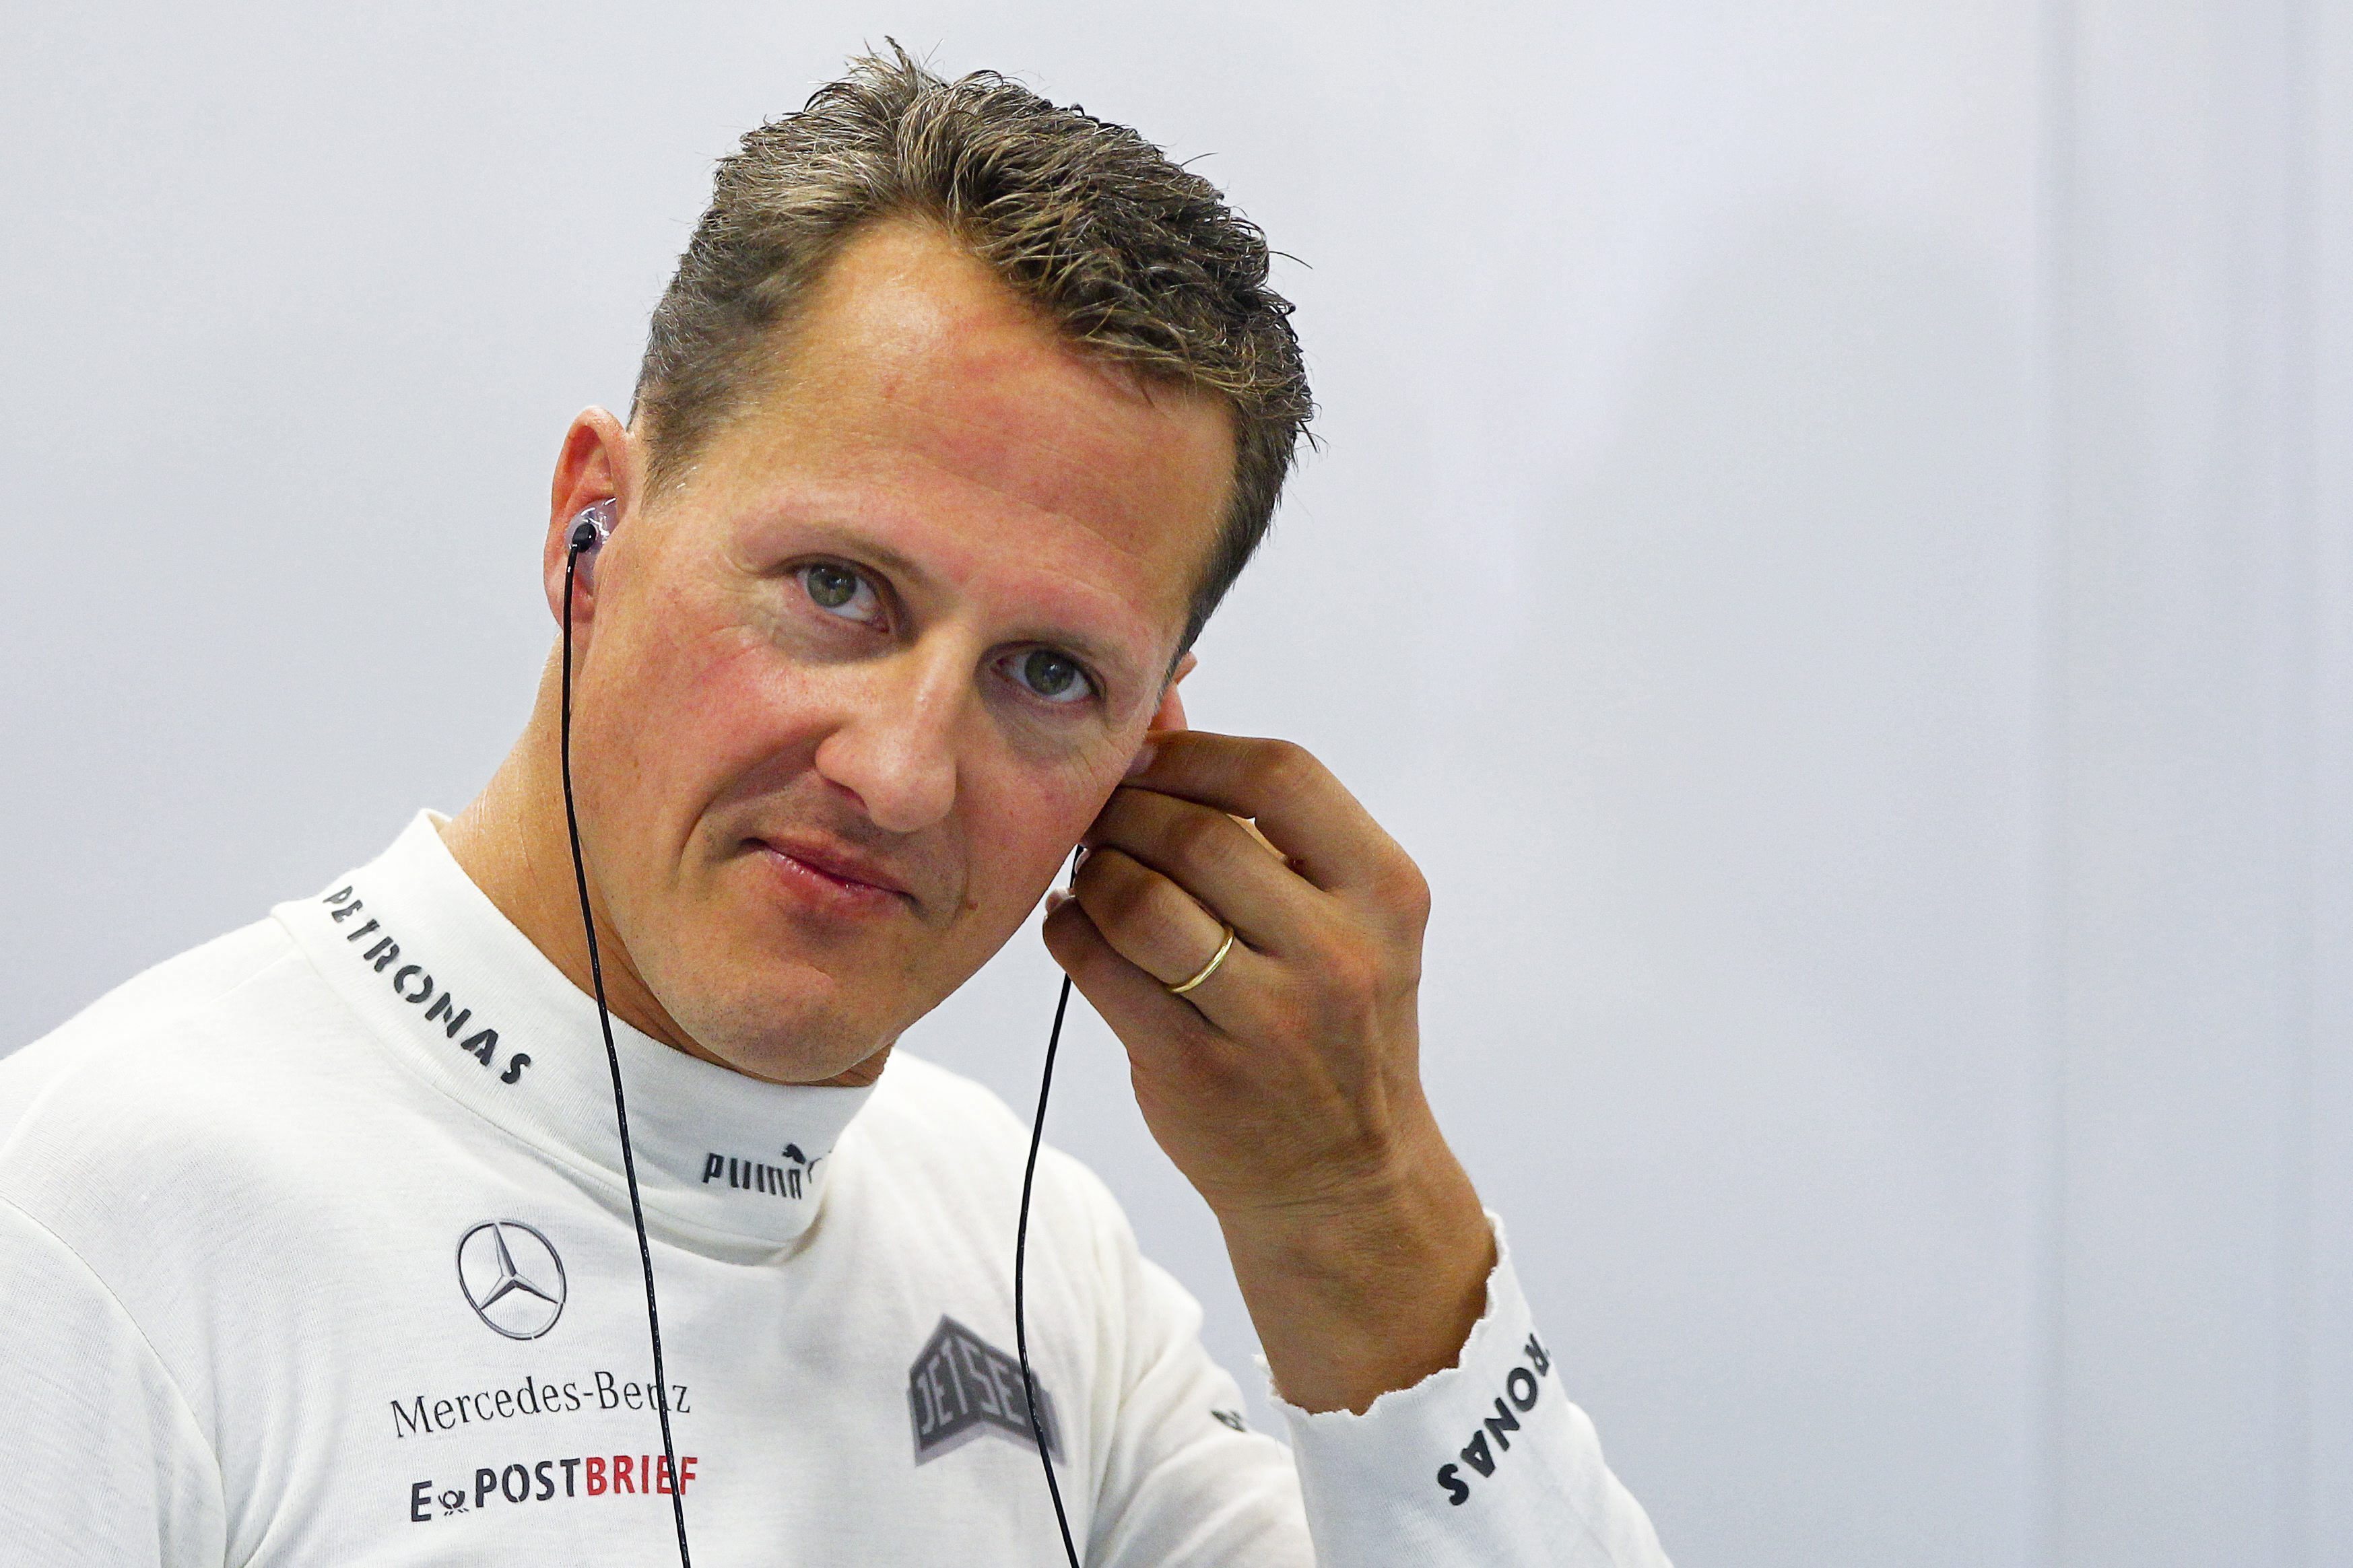 Revelaron la millonaria suma que gasta la familia de Michael Schumacher por año en su tratamiento tras su trágico accidente